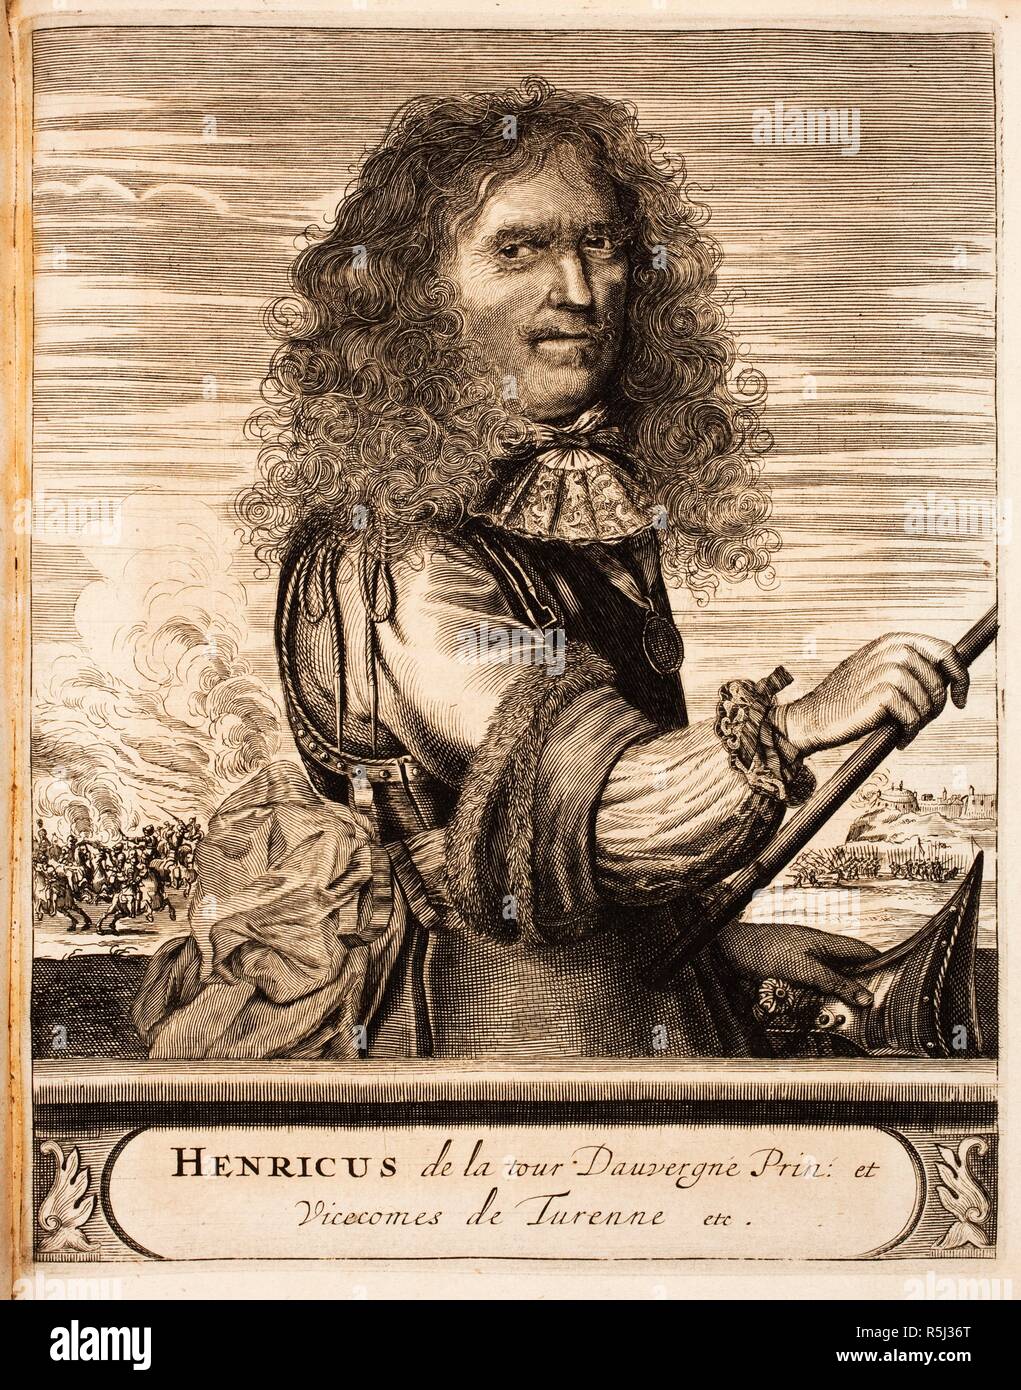 Il maresciallo Henri de La Tour d'Auvergne, vicomte de Turenne (1611-1675) (Da: Schauplatz des Krieges). Museo: Bibliotheek van het Vredespaleis, l'Aia. Autore: anonimo. Foto Stock